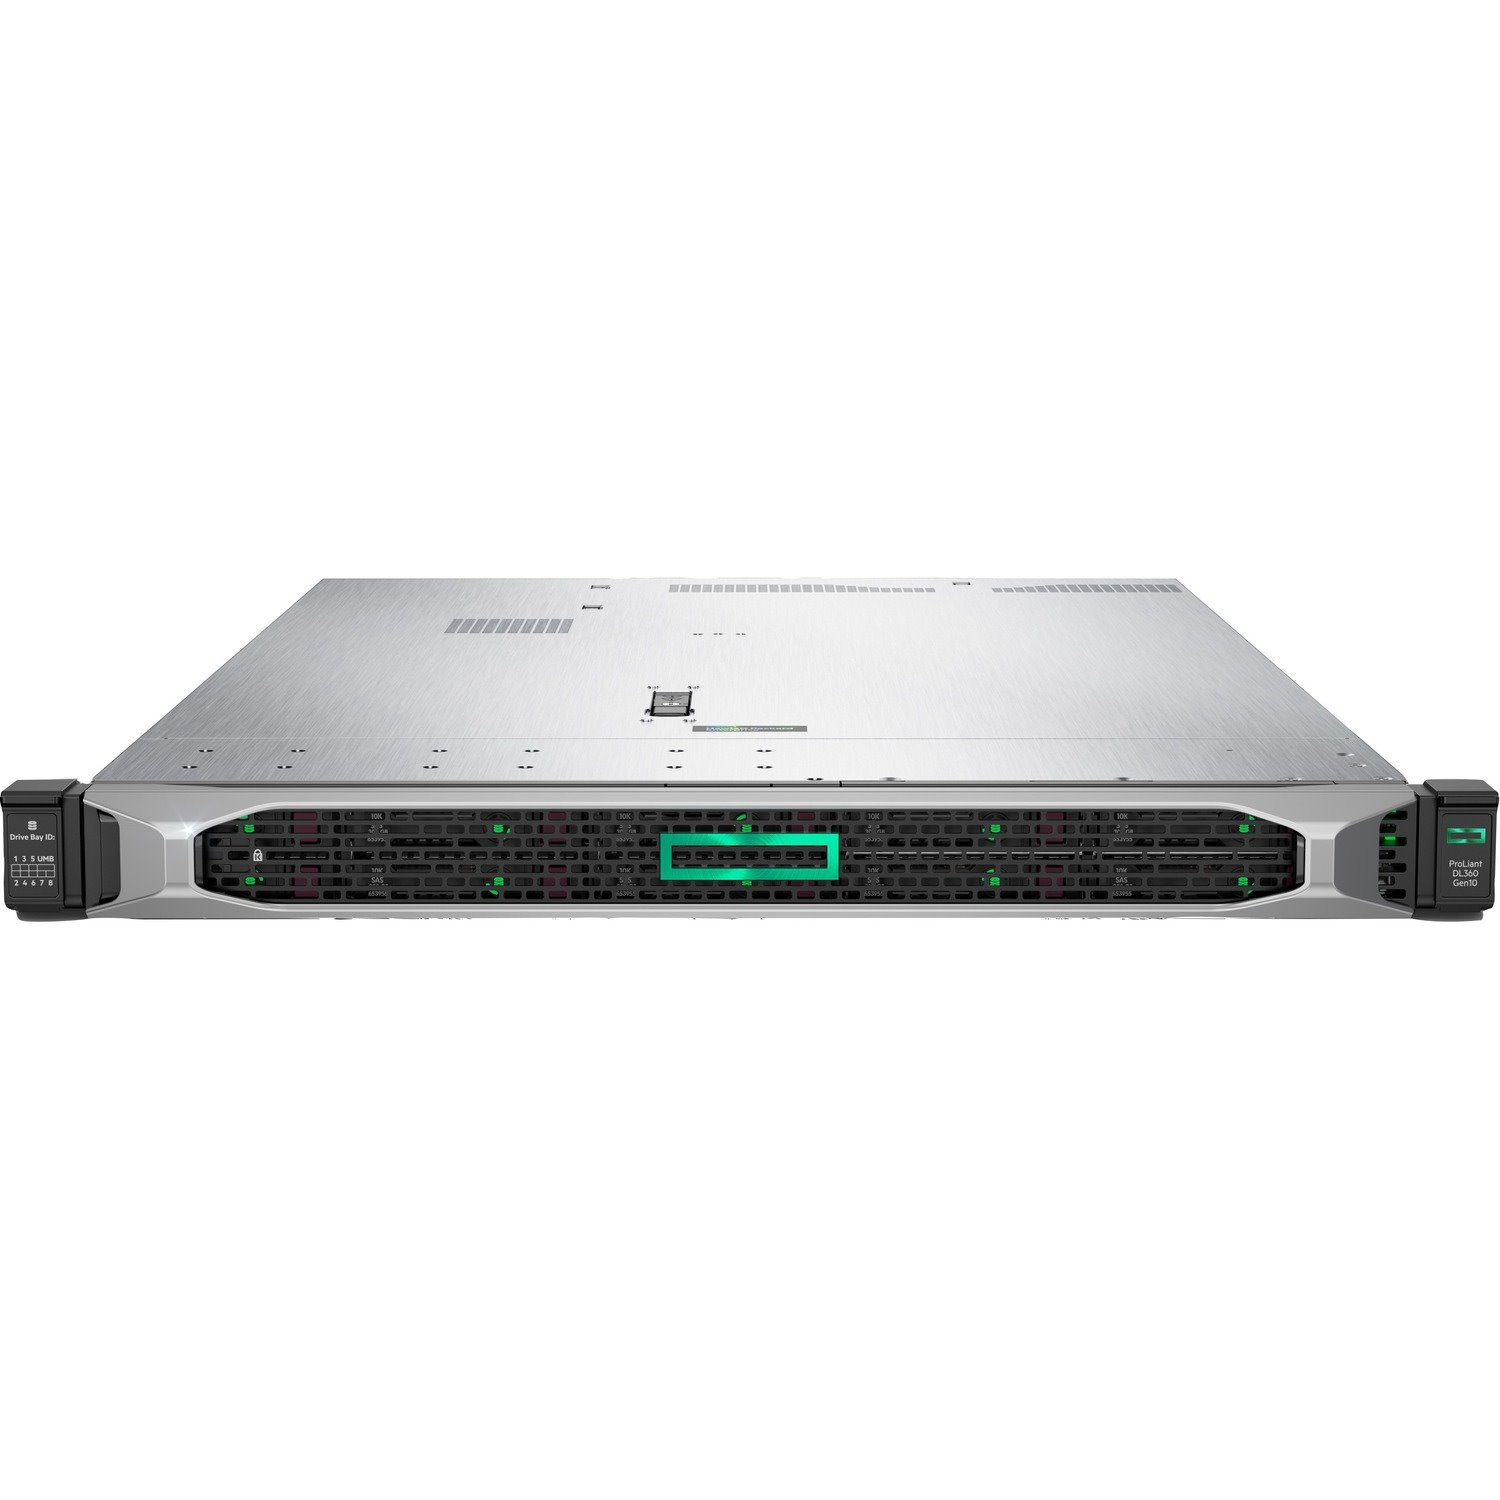 HPE ProLiant DL360 G10 1U Rack Server - 1 x Intel Xeon Silver 4210R 2.40 GHz - 16 GB RAM - Serial ATA/600, 12Gb/s SAS Controller